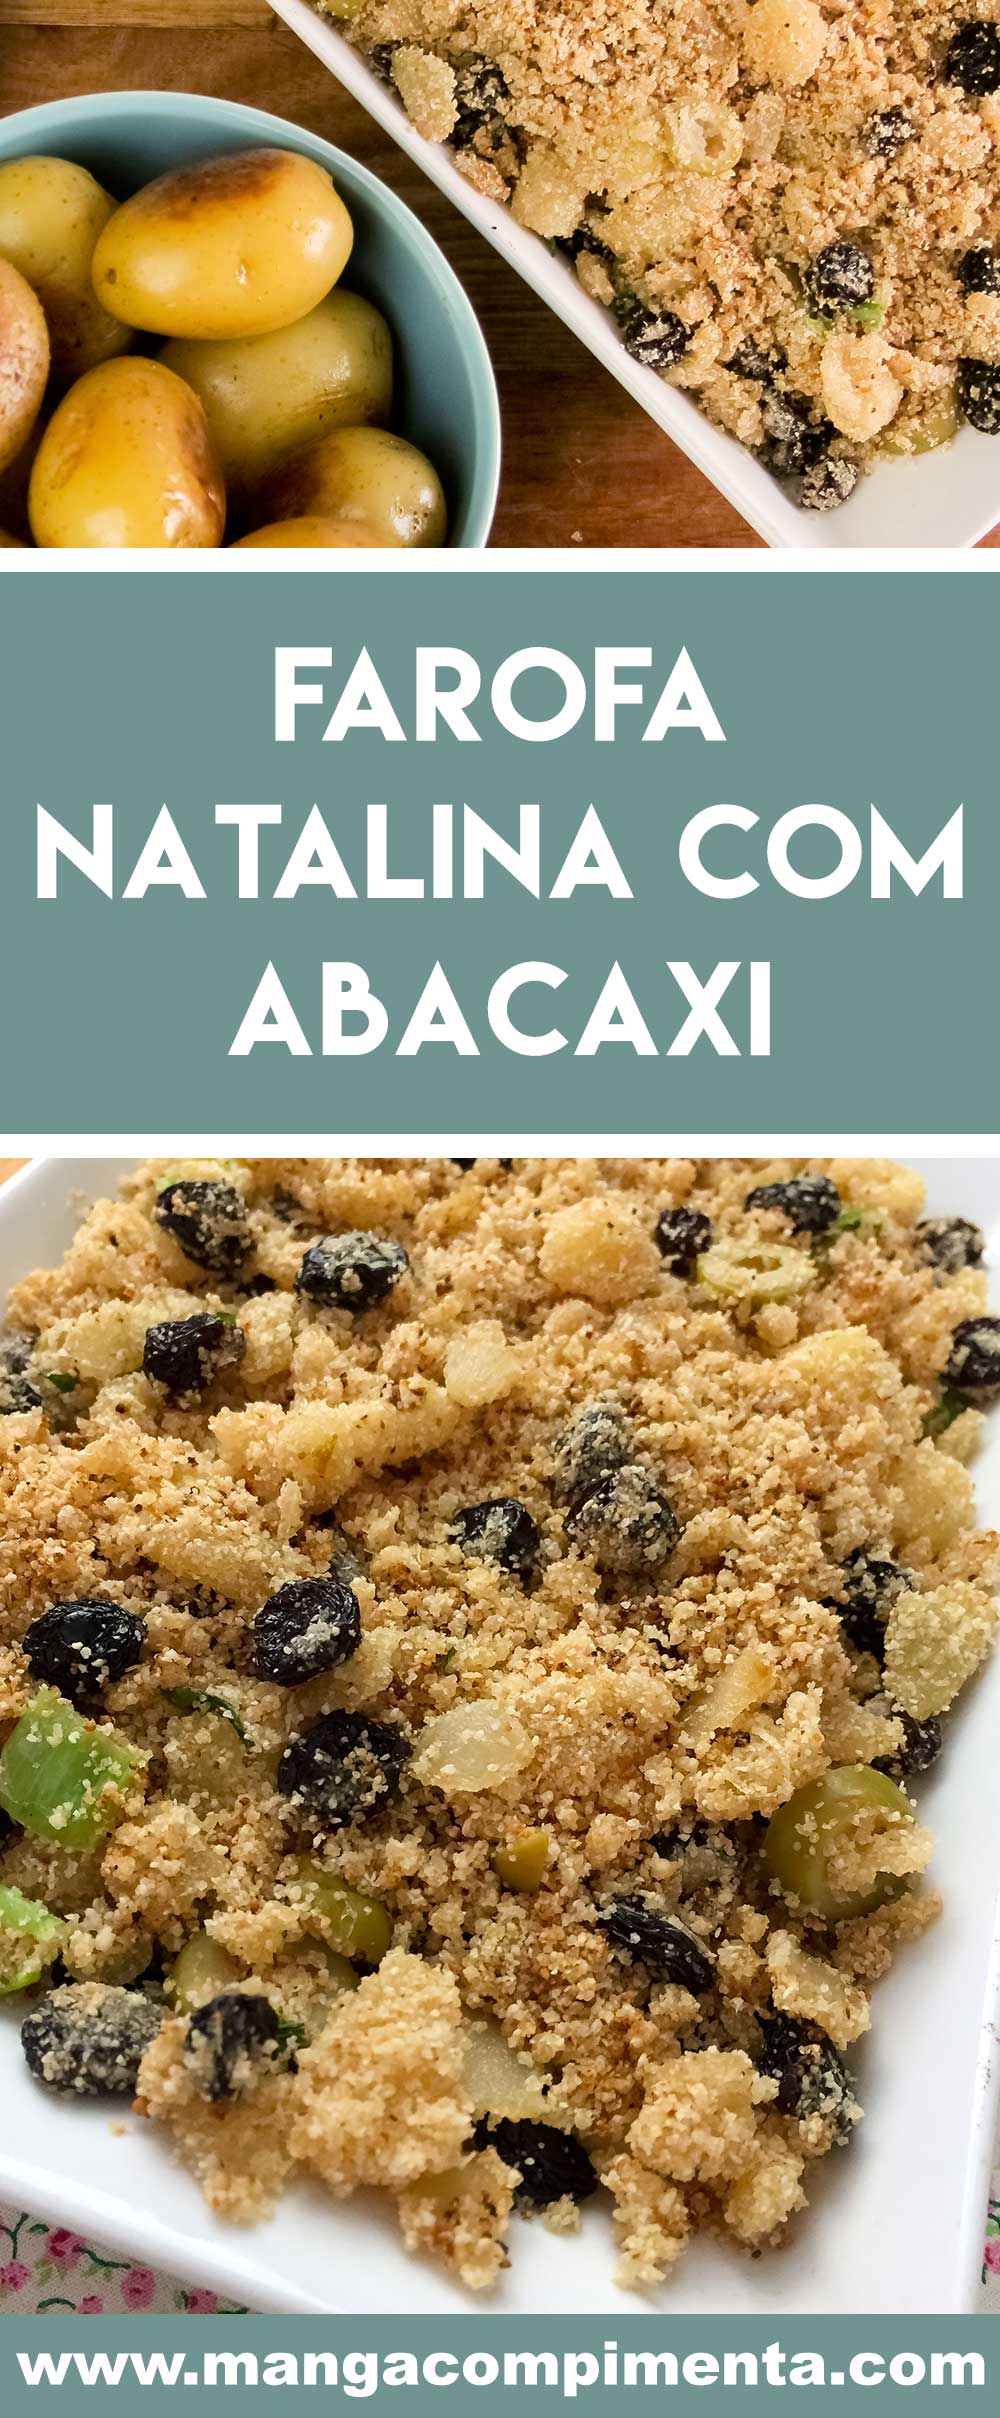 Receita de Farofa Natalina com Abacaxi - fácil de fazer e saborosa para servir com o assado do final de ano.